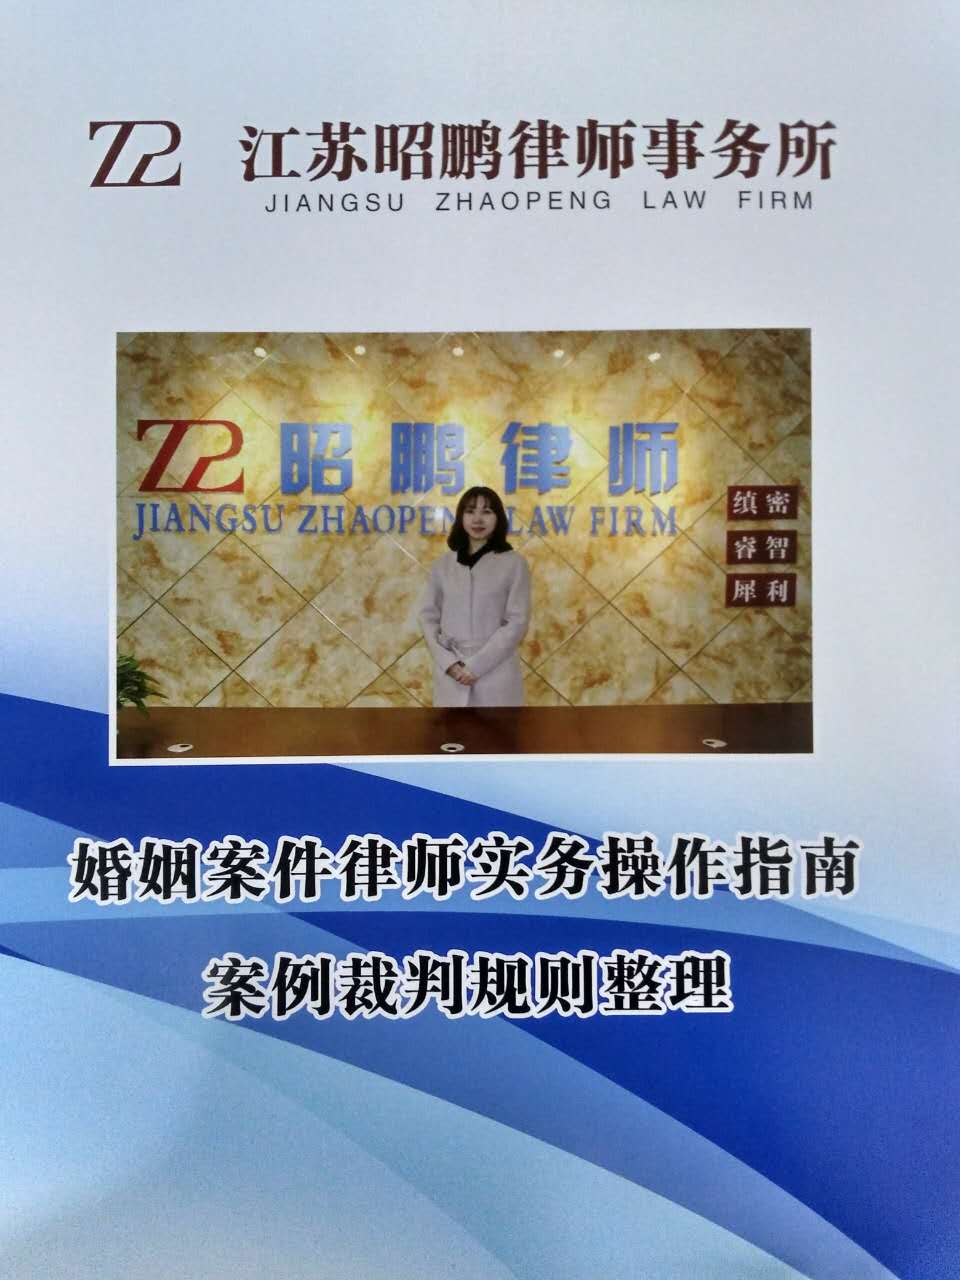 刘春杰律师主导编撰的律师婚姻案件办案指南